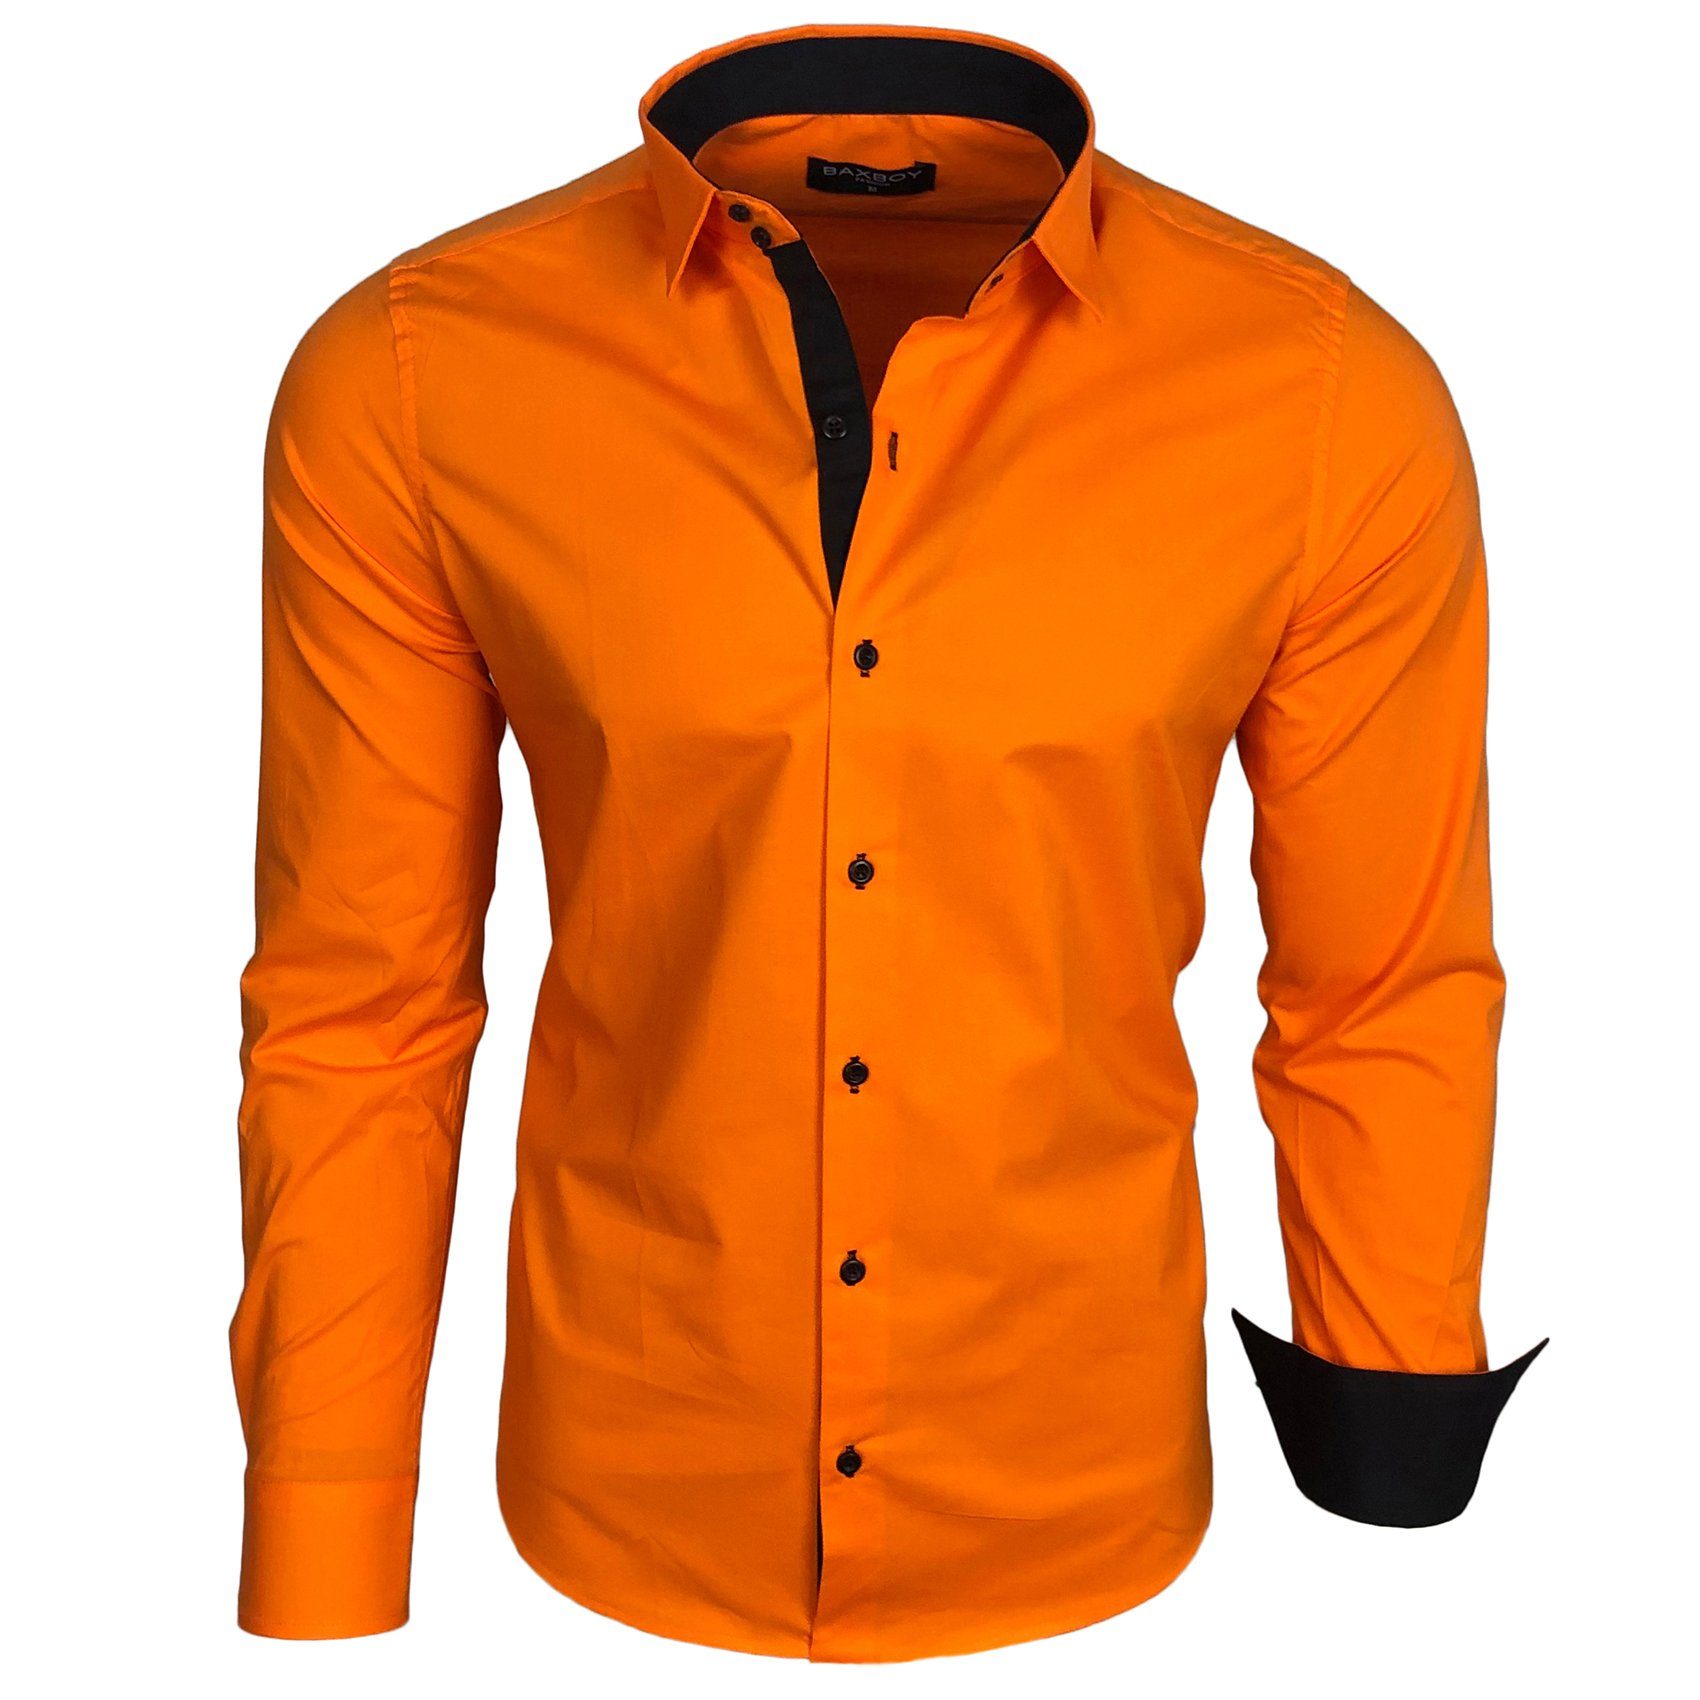 Baxboy Langarmhemd Baxboy Herren Kontrast Hemden Business Freizeit modernes Hemd